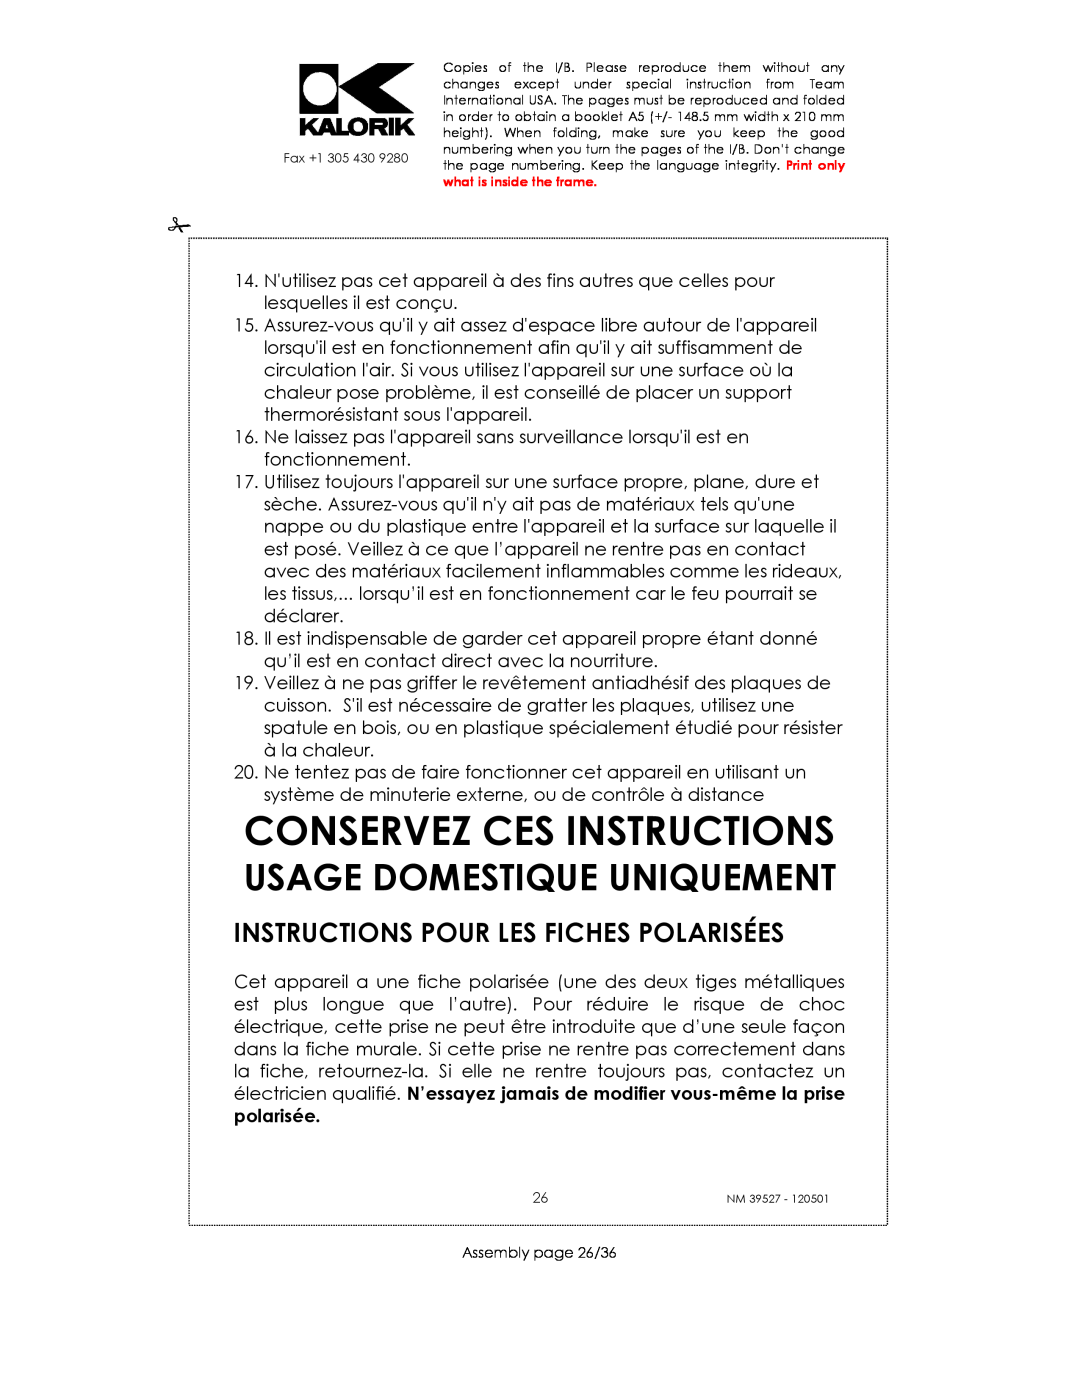 Kalorik NM 39527 manual Conservez Ces Instructions, Instructions Pour Les Fiches Polarisées, Usage Domestique Uniquement 